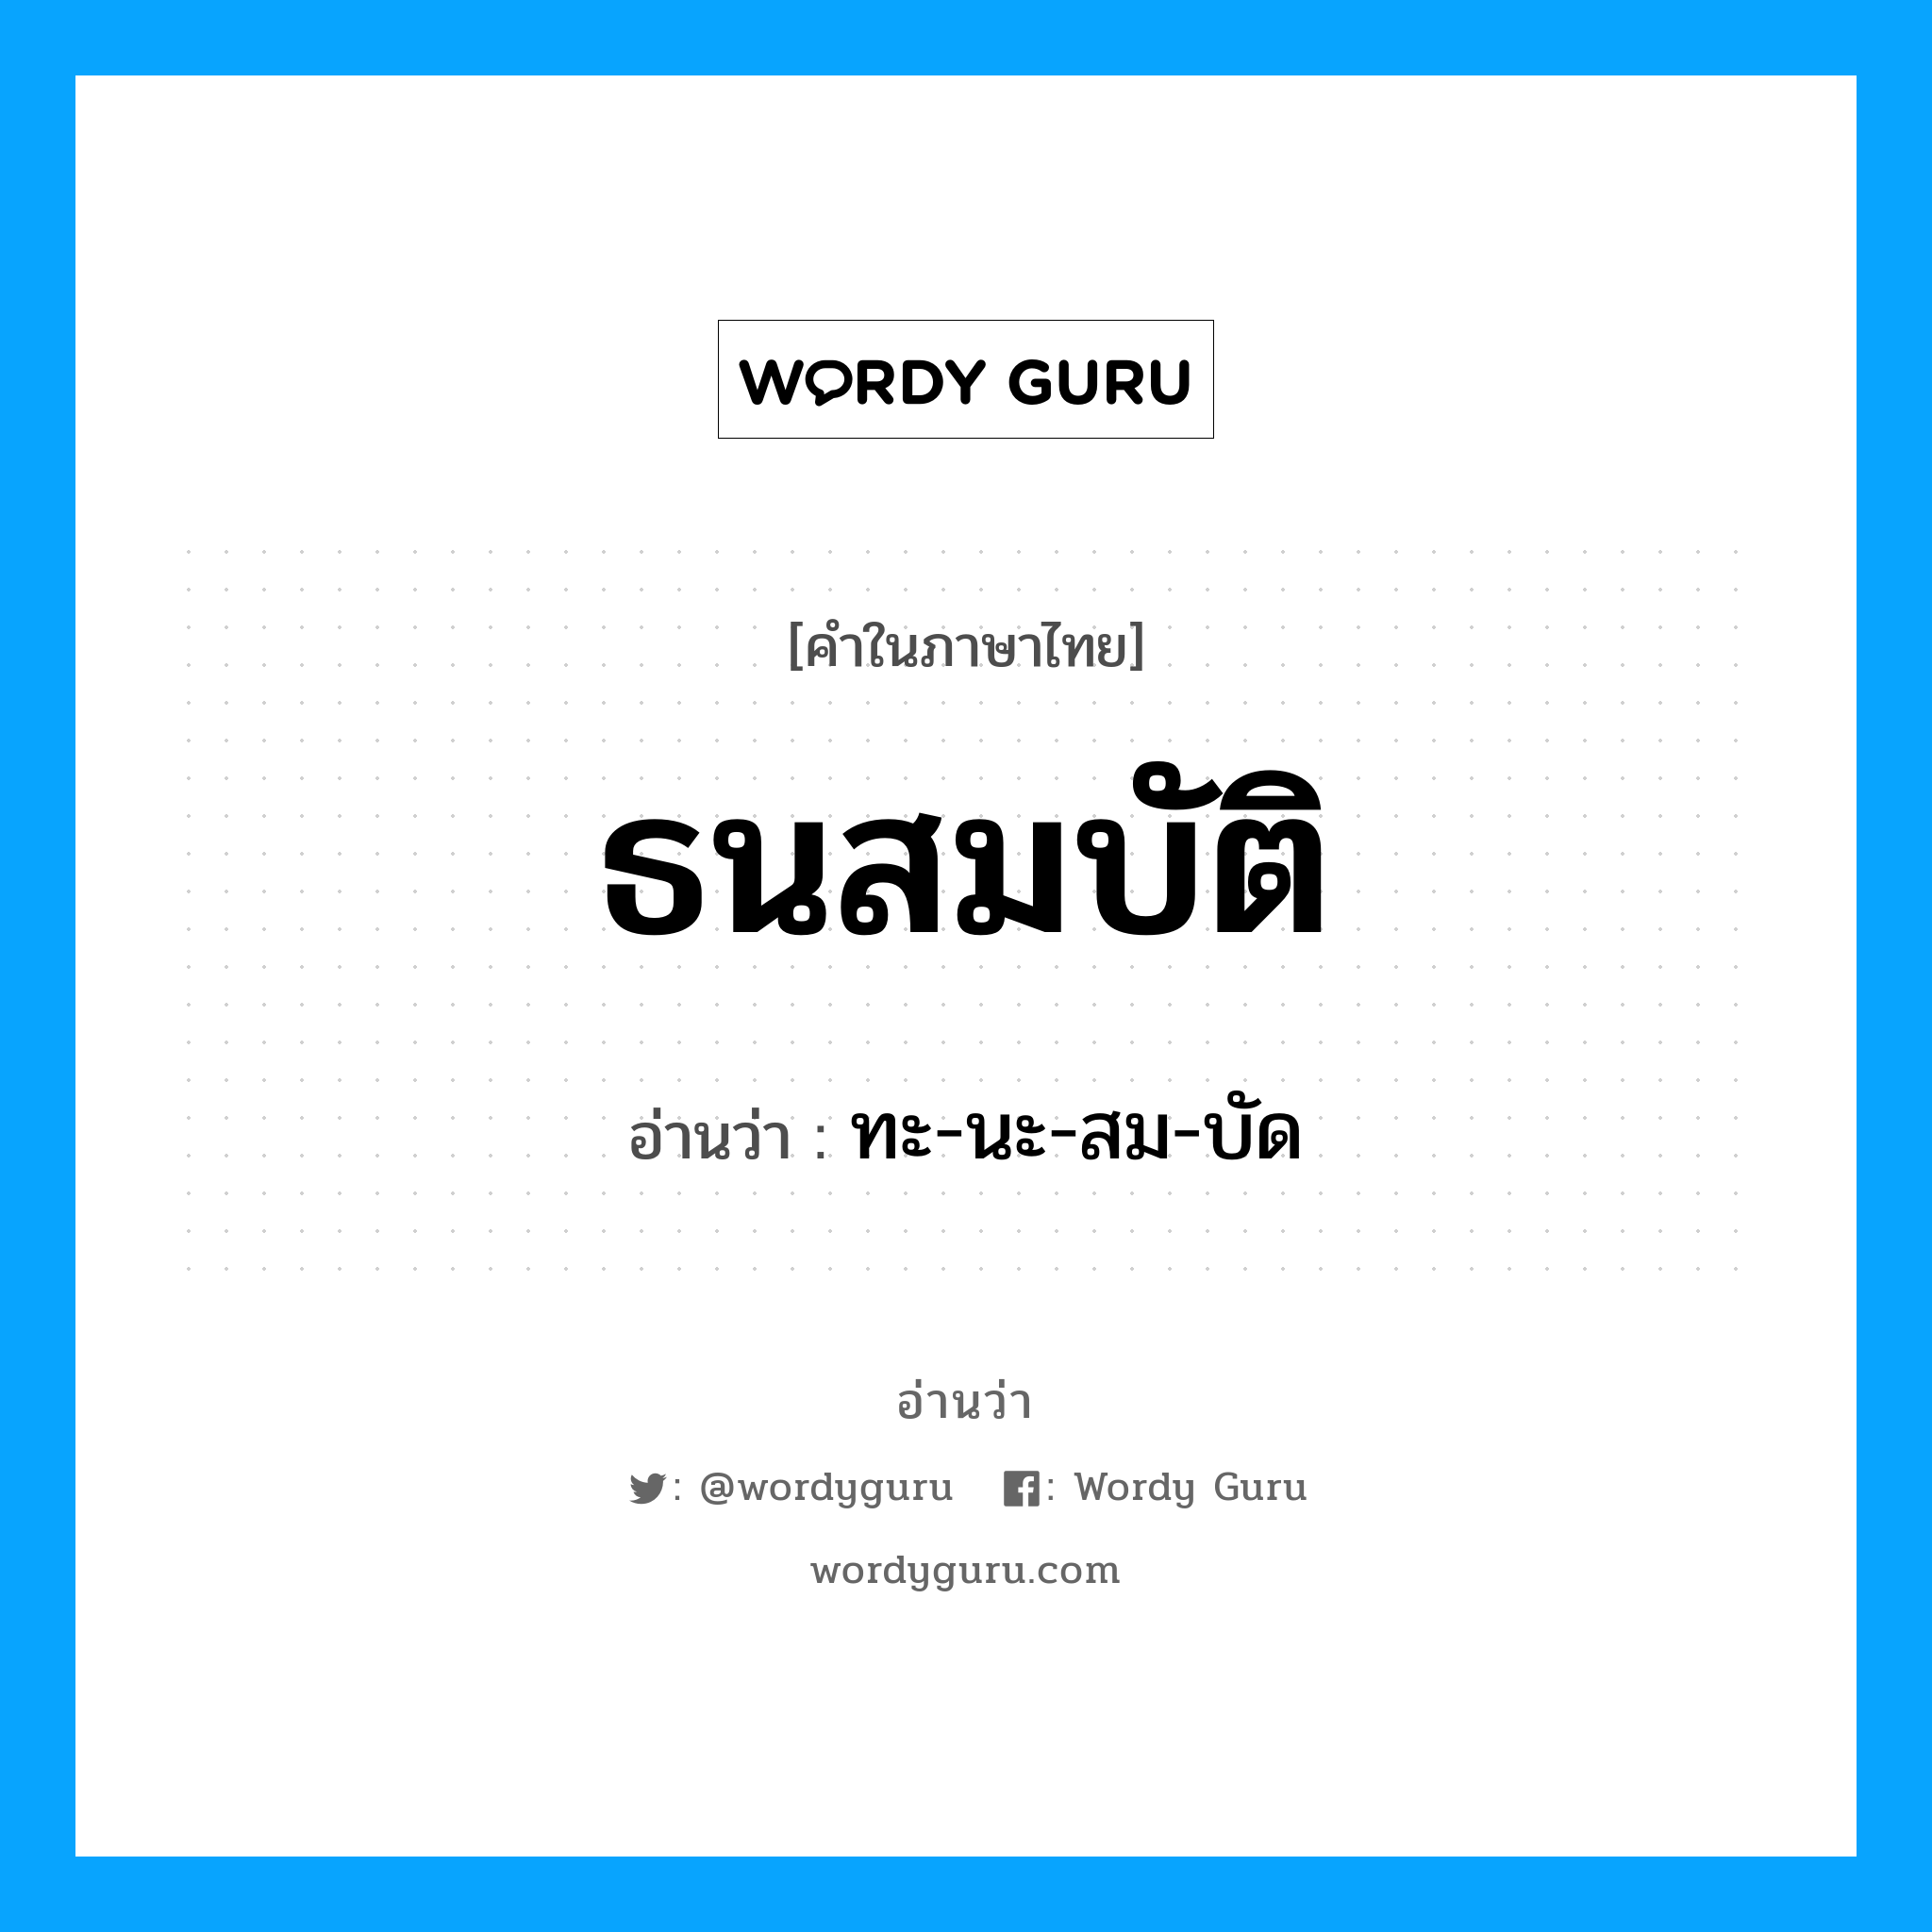 ทะ-นะ-สม-บัด เป็นคำอ่านของคำไหน?, คำในภาษาไทย ทะ-นะ-สม-บัด อ่านว่า ธนสมบัติ